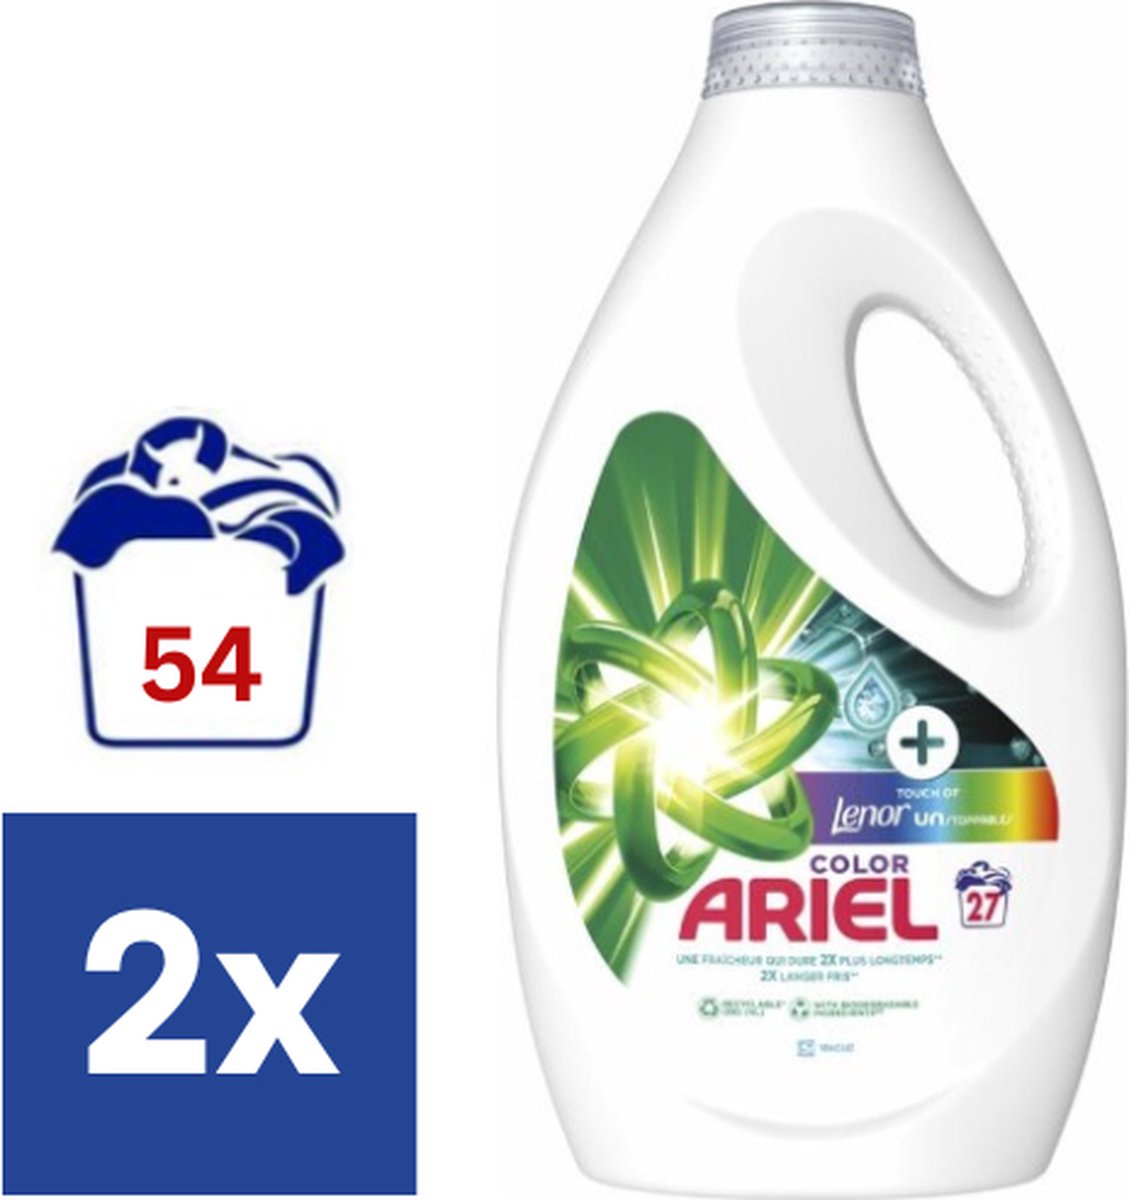 Ariel Color Lenor Unstoppables Vloeibaar Wasmiddel - 2 x 1.245 l (54 wasbeurten)